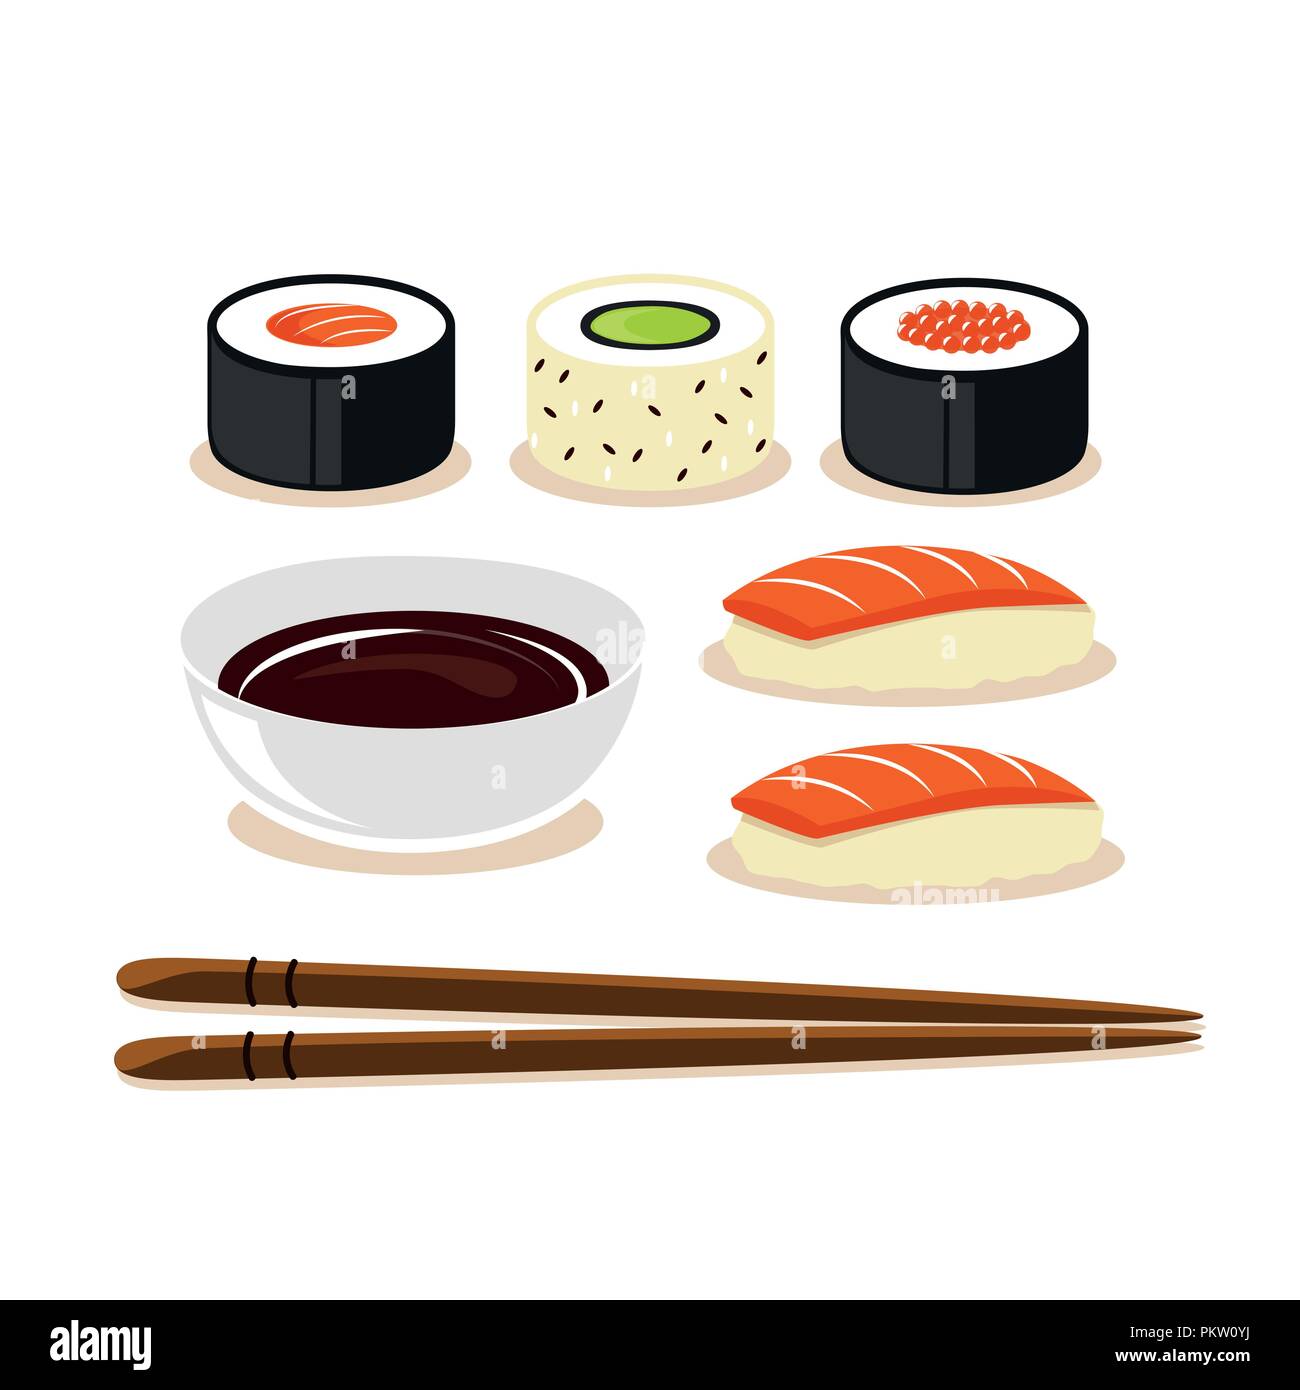 Bunte Sushi Set von verschiedenen Arten Stäbchen mit Sojasoße isoliert Vektor-illustration EPS 10. Stock Vektor